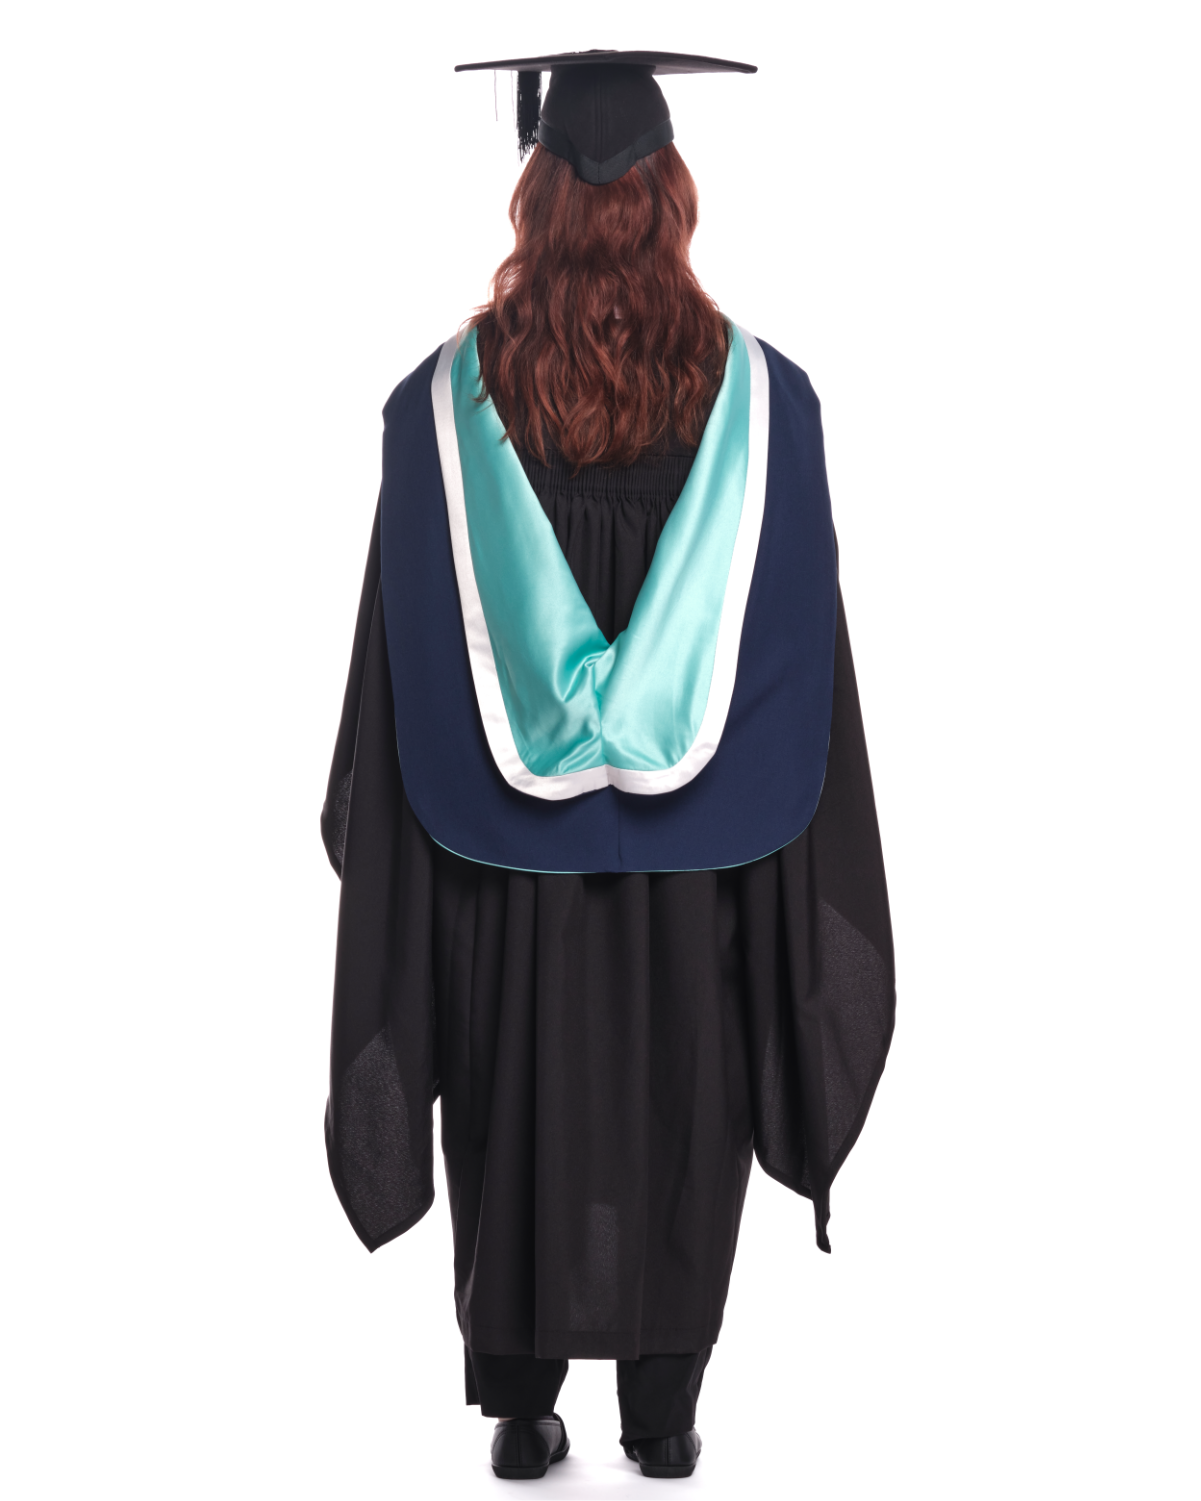 Arden University | Postgraduate Certificate Gown, Cap and Hood Set